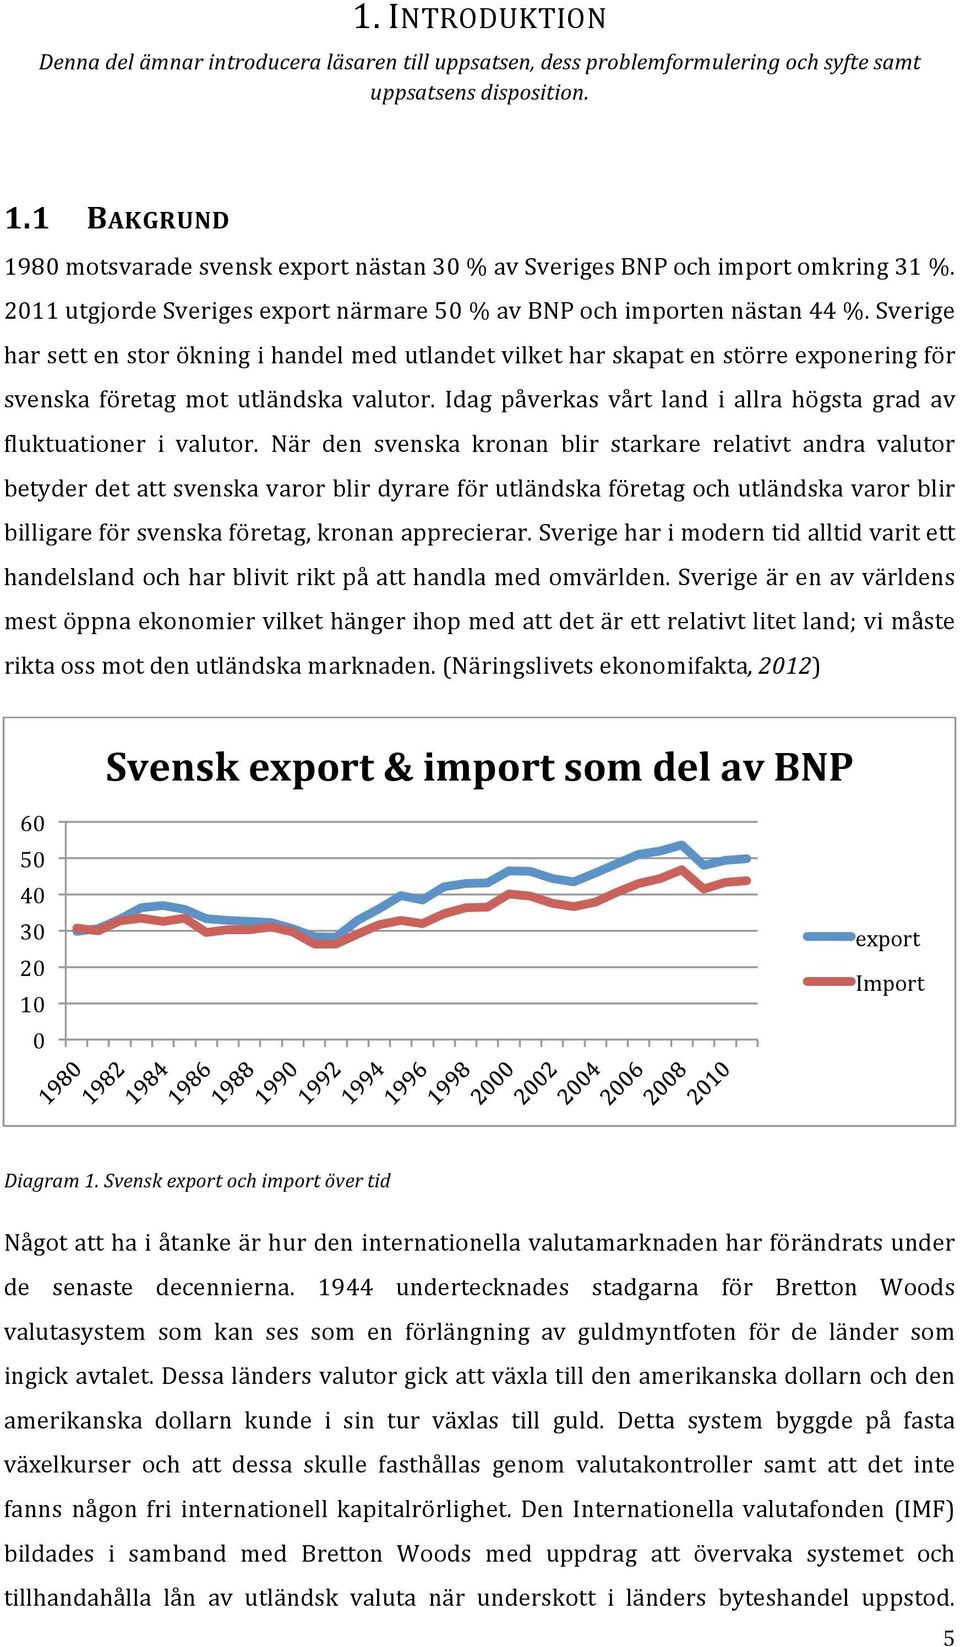 Sverige har sett en stor ökning i handel med utlandet vilket har skapat en större exponering för svenska företag mot utländska valutor.